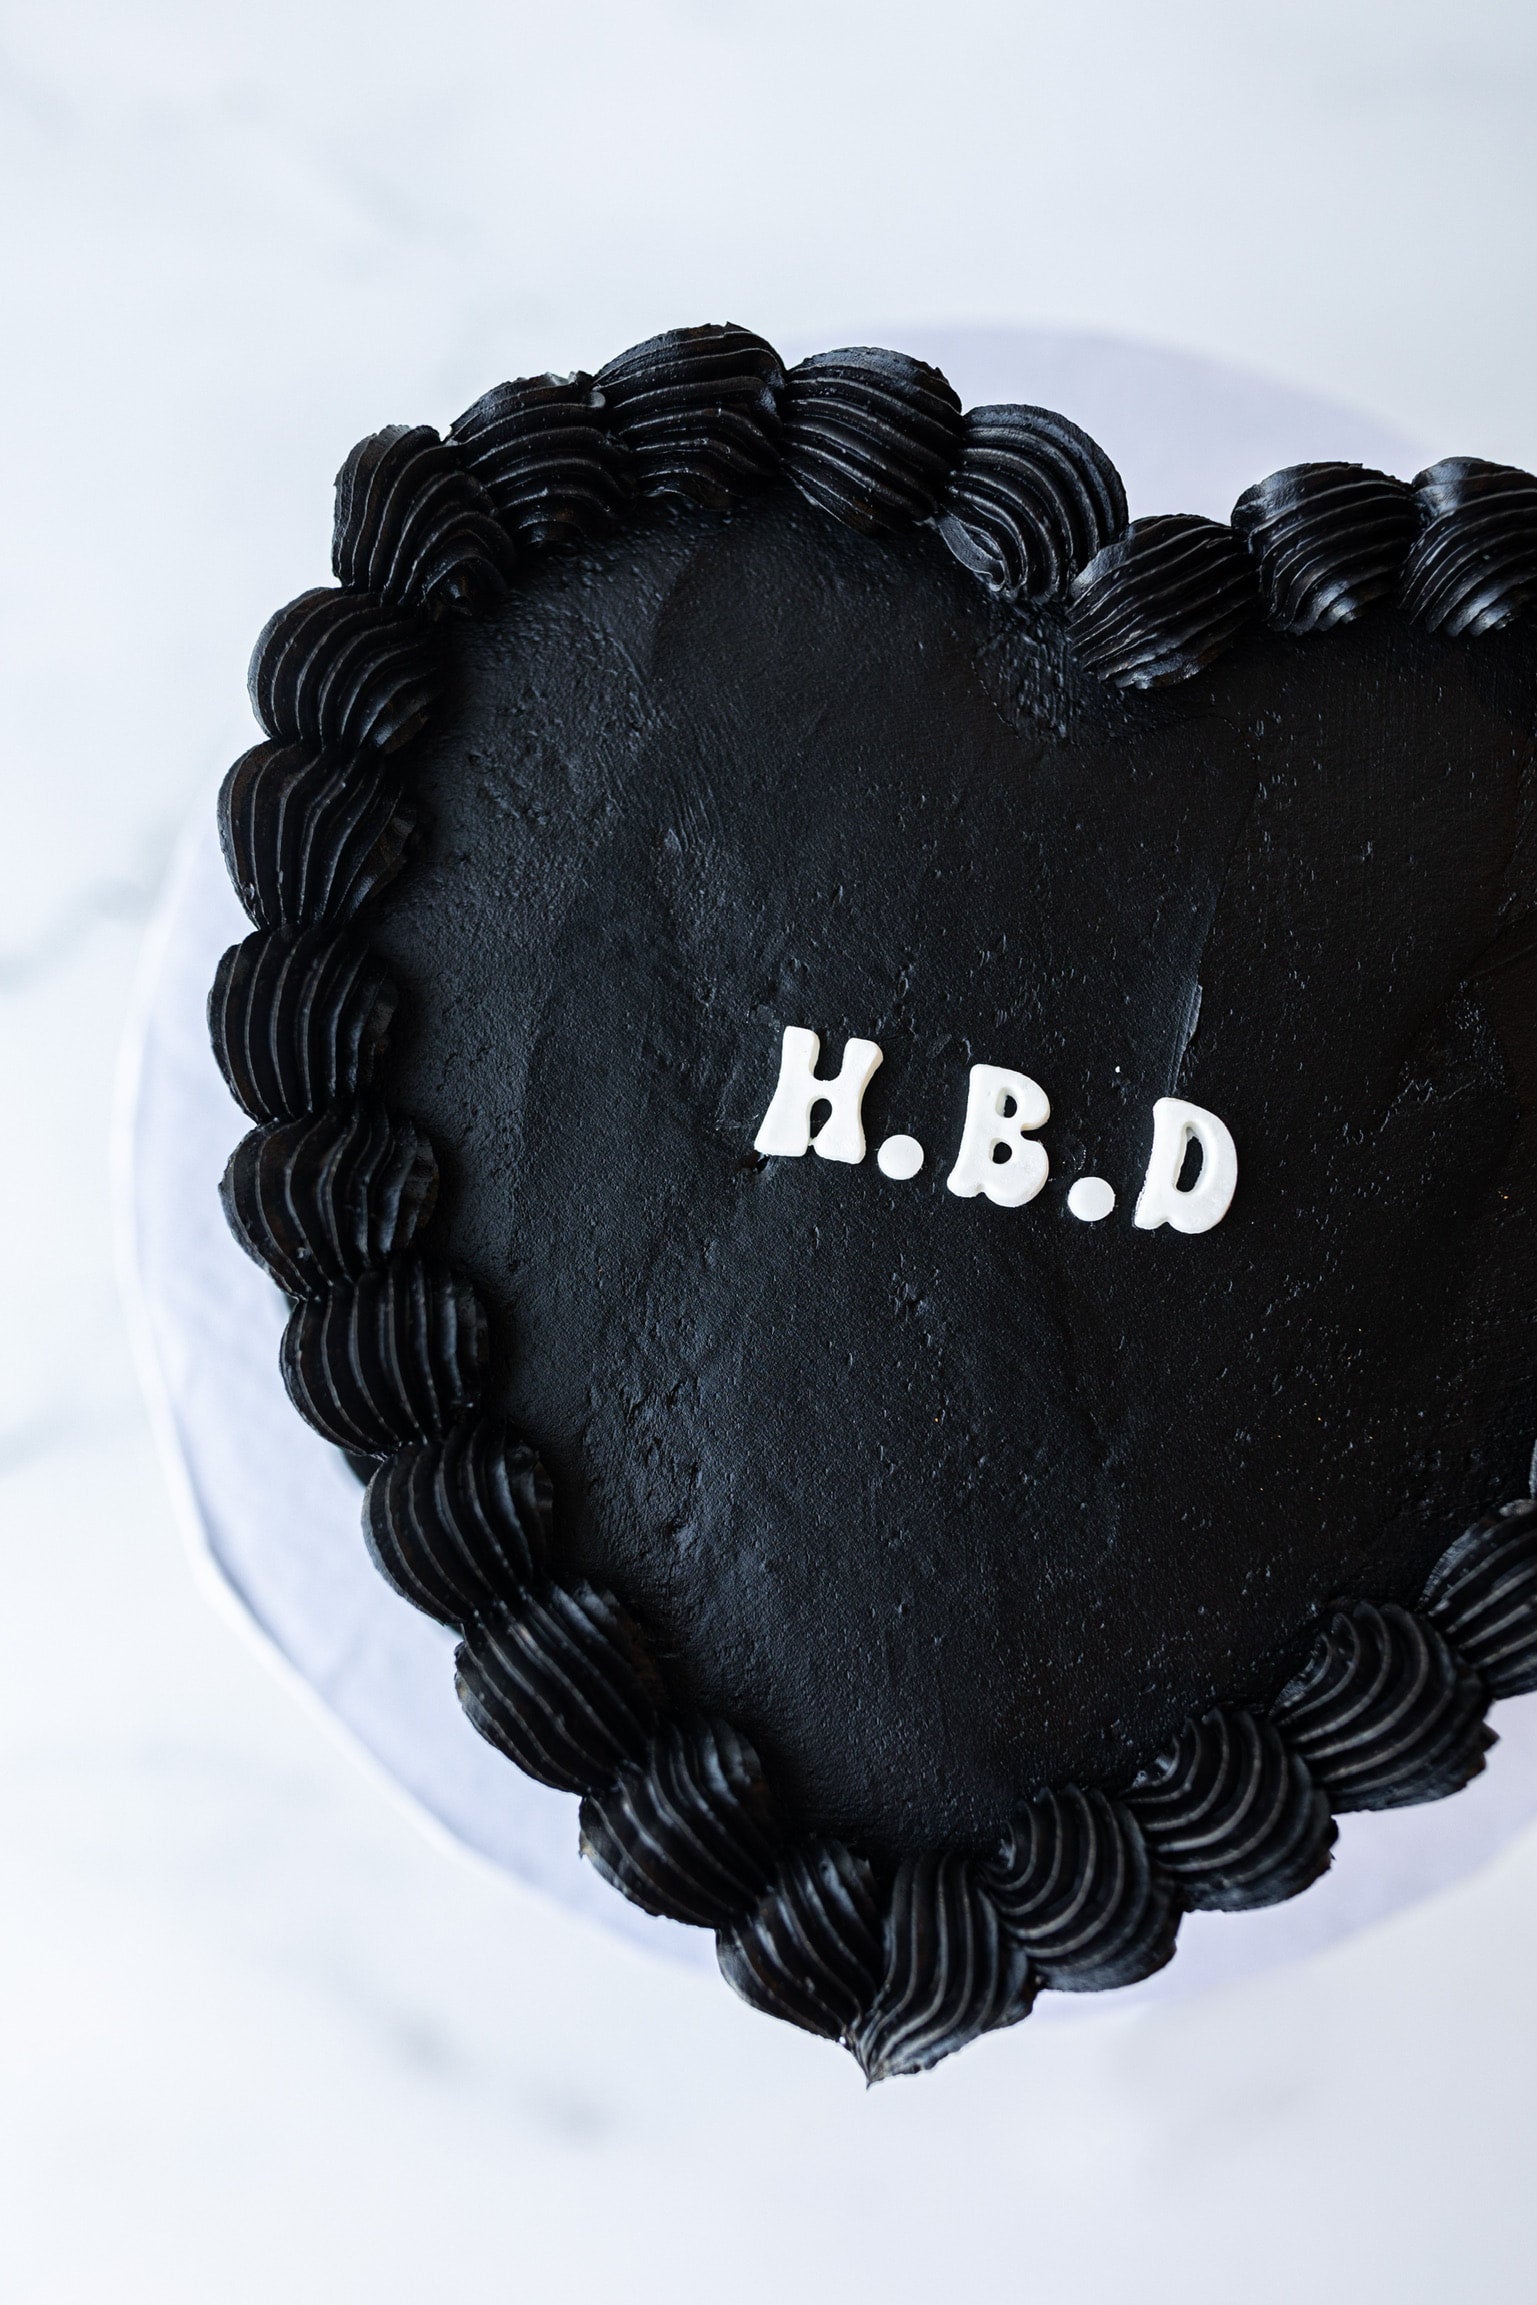 Black Velvet Cake - My Gorgeous Recipes